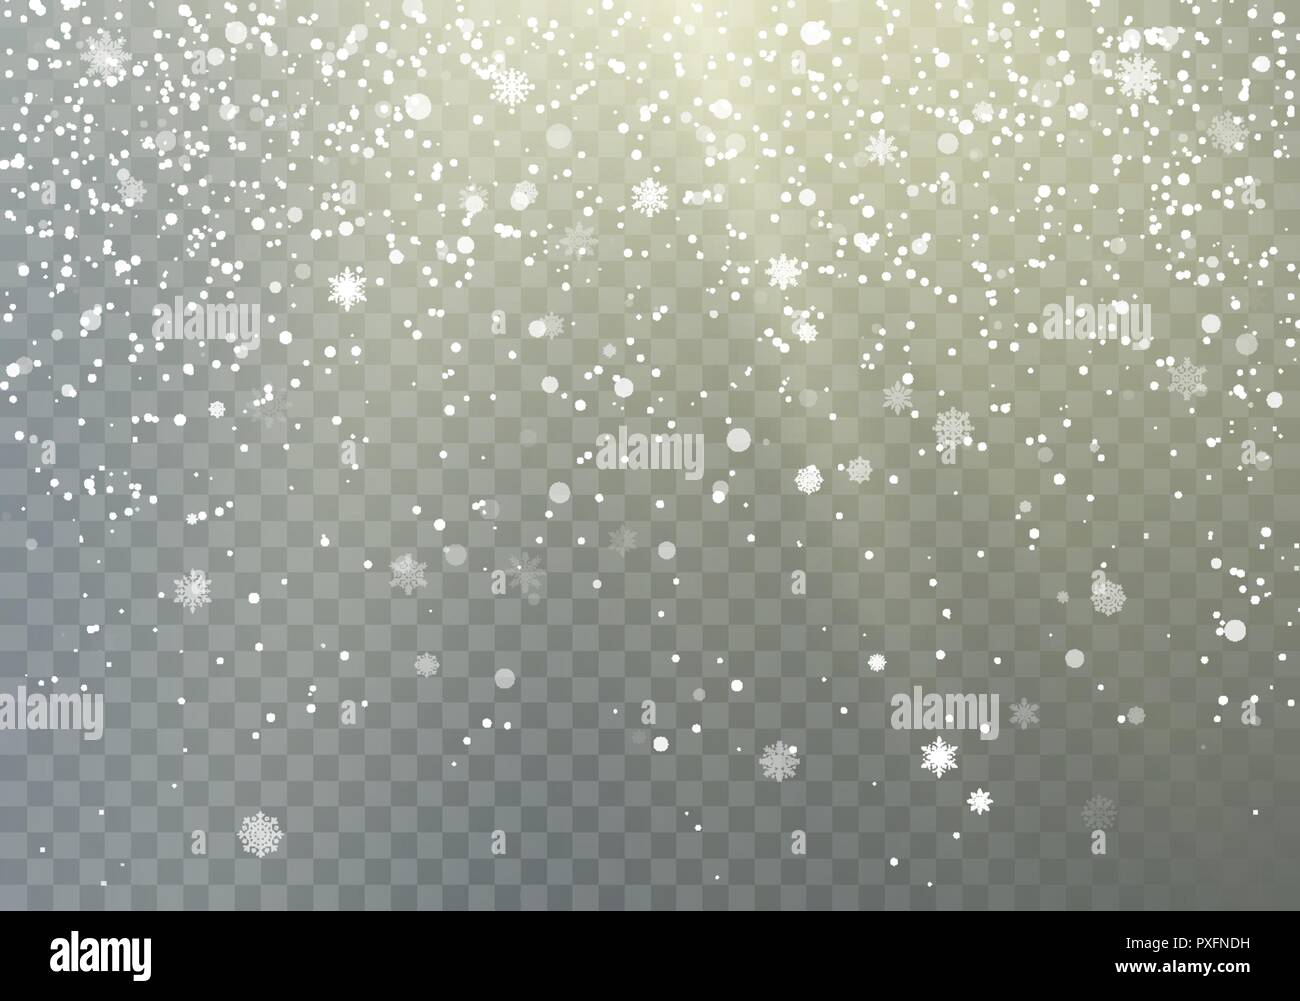 Fallende Schneeflocken transparenten Hintergrund. Frost, Schnee und Sonnenschein. Winter Muster mit crystallic Schneeflocken. Weihnachten und neues Jahr Hintergrund. Vect Stock Vektor